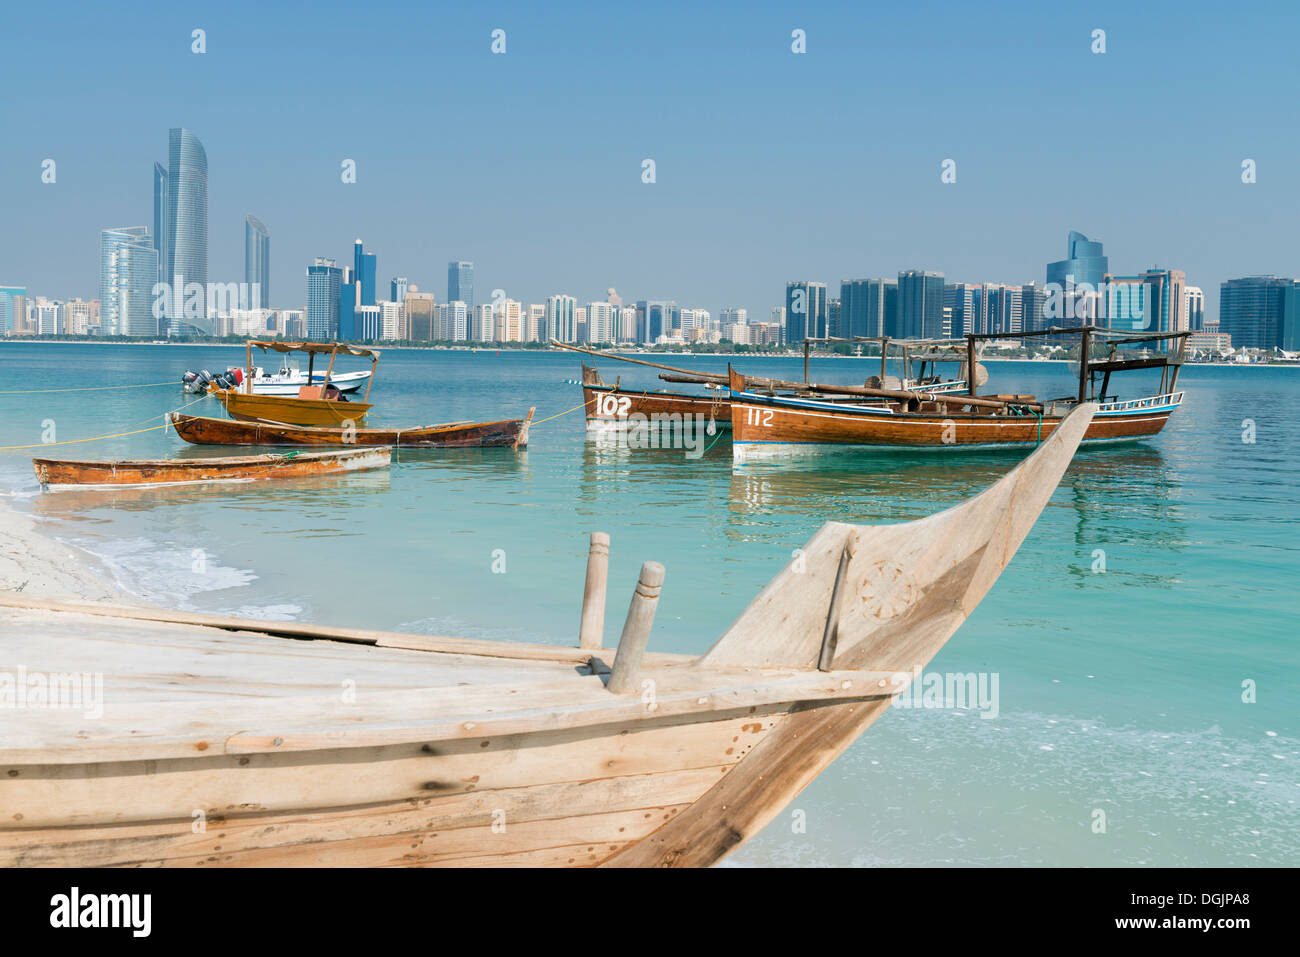 Skyline de Abu Dhabi moderne et vieux bateaux de pêche traditionnels à Heritage Village à Abu Dhabi dans les Émirats Arabes Unis ÉMIRATS ARABES UNIS Banque D'Images